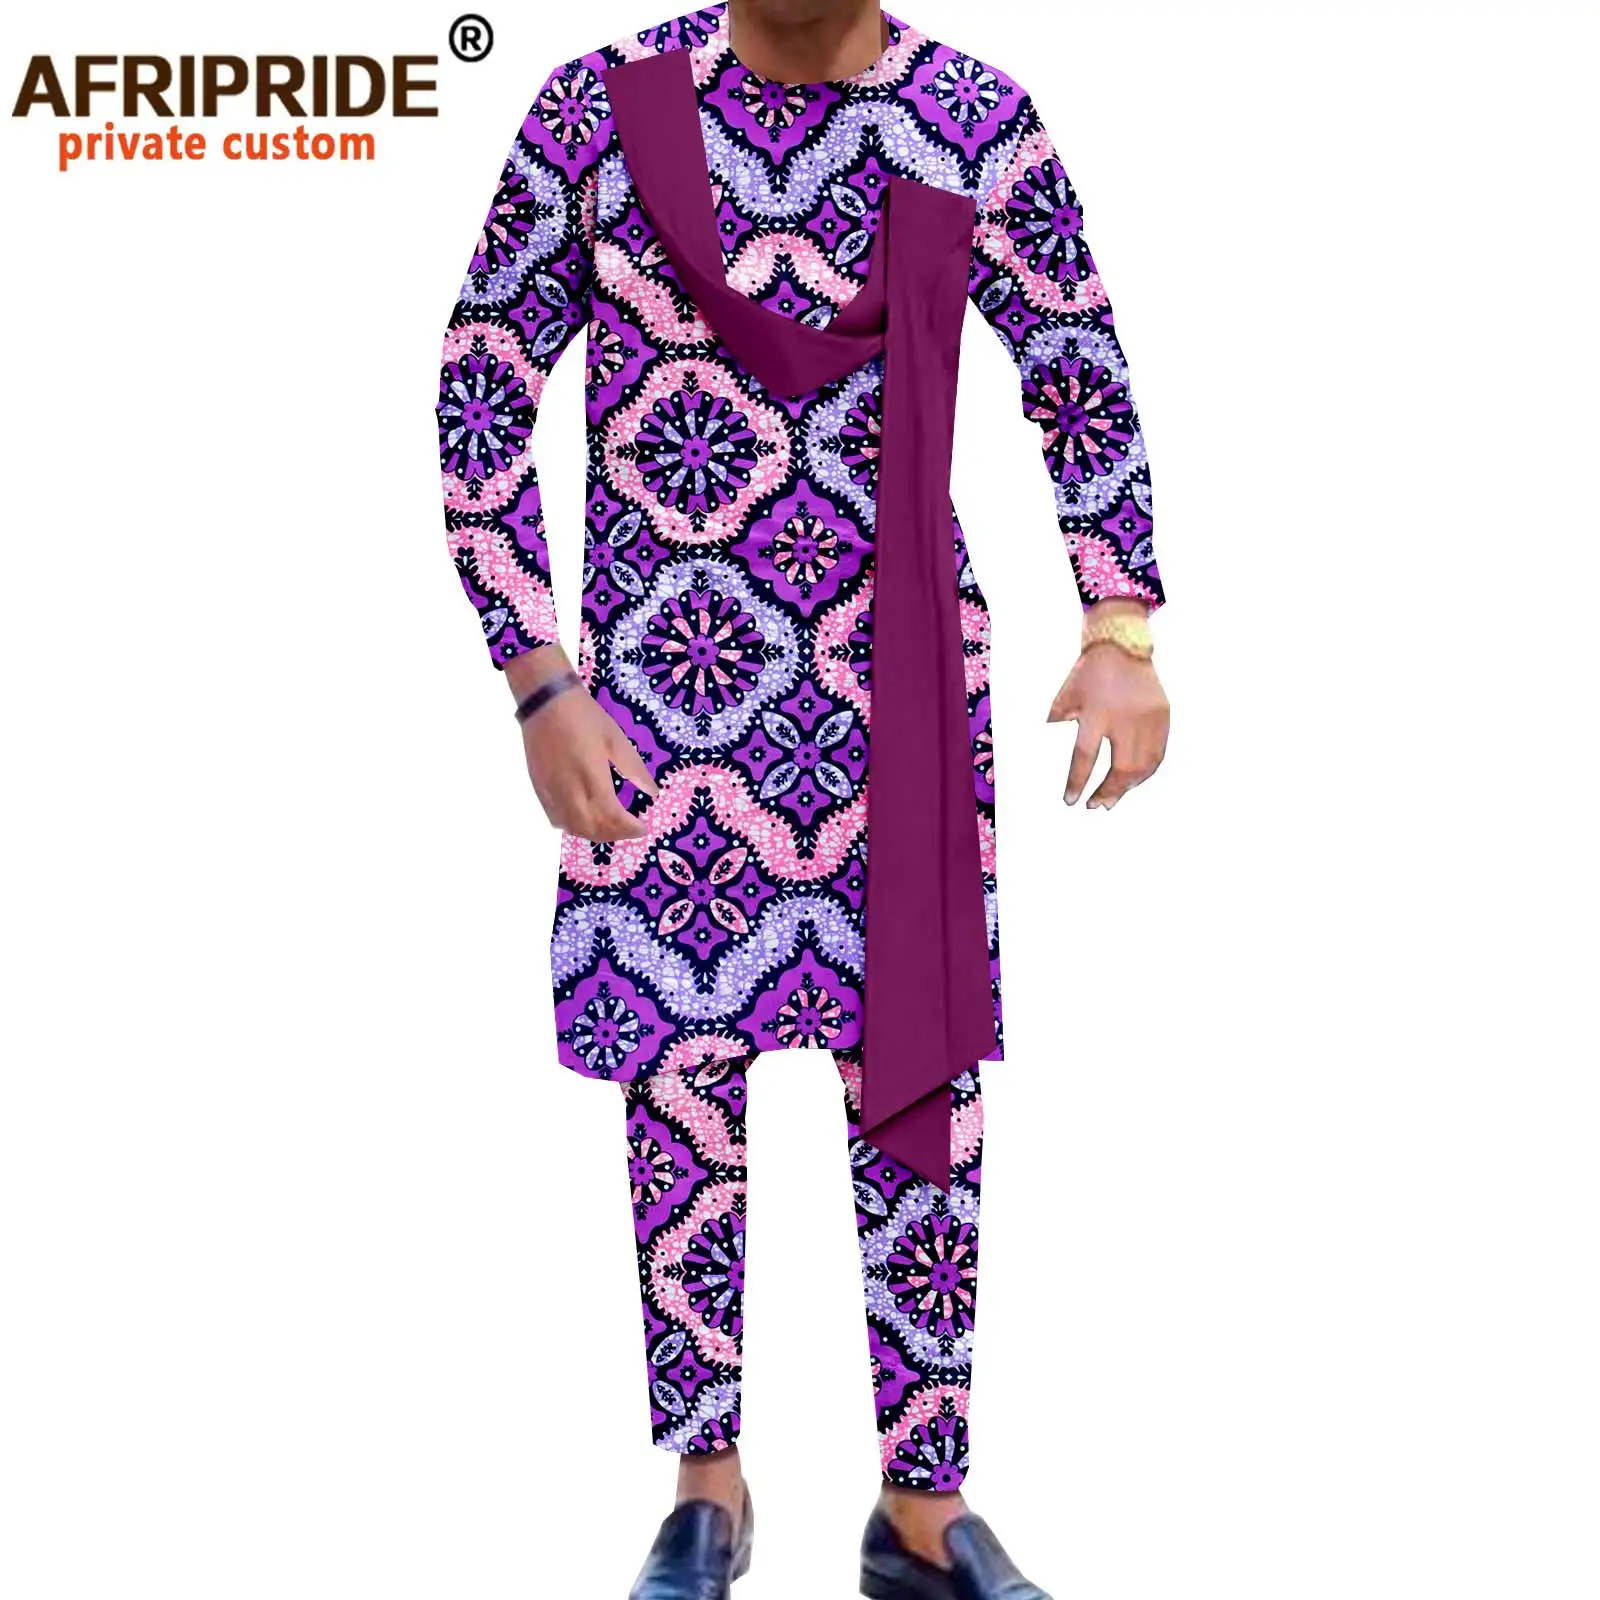 African Wear African men clothing Bespoke Men's Dashiki Dashiki Shirt African Wedding Suit African fashion